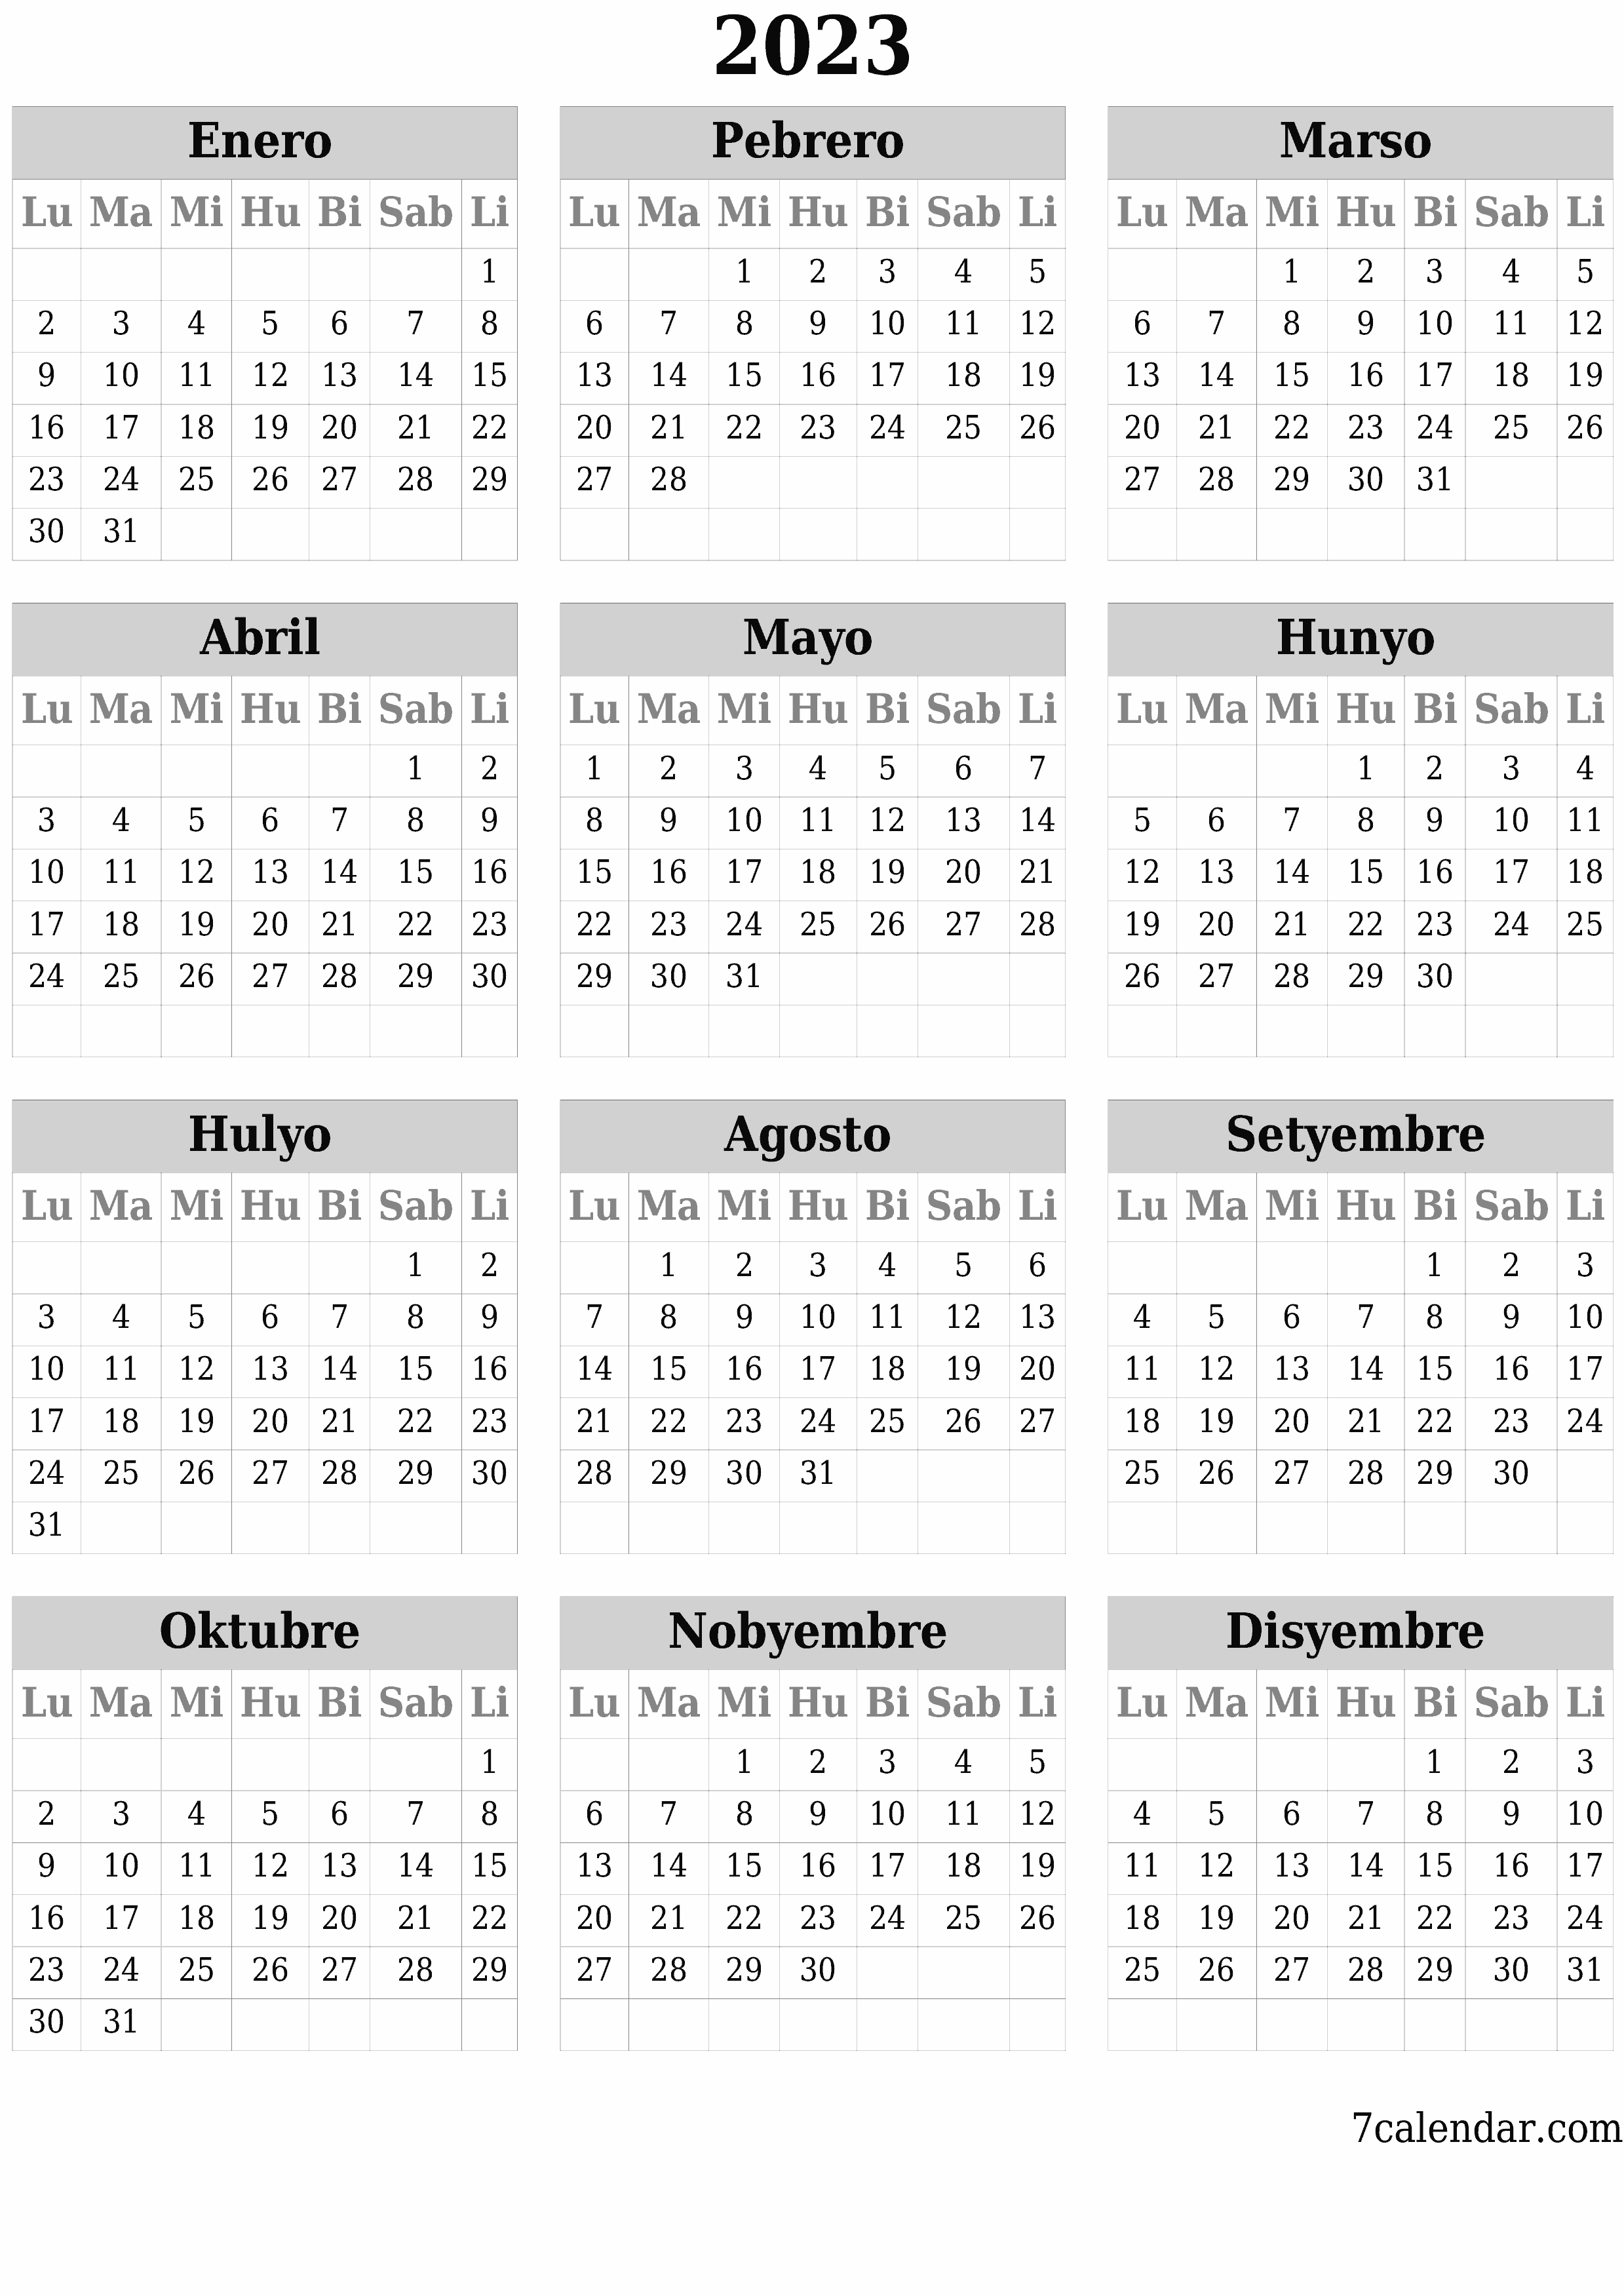 napi-print na sa dingding template ng libreng patayo Taunan kalendaryo Setyembre (Set) 2023